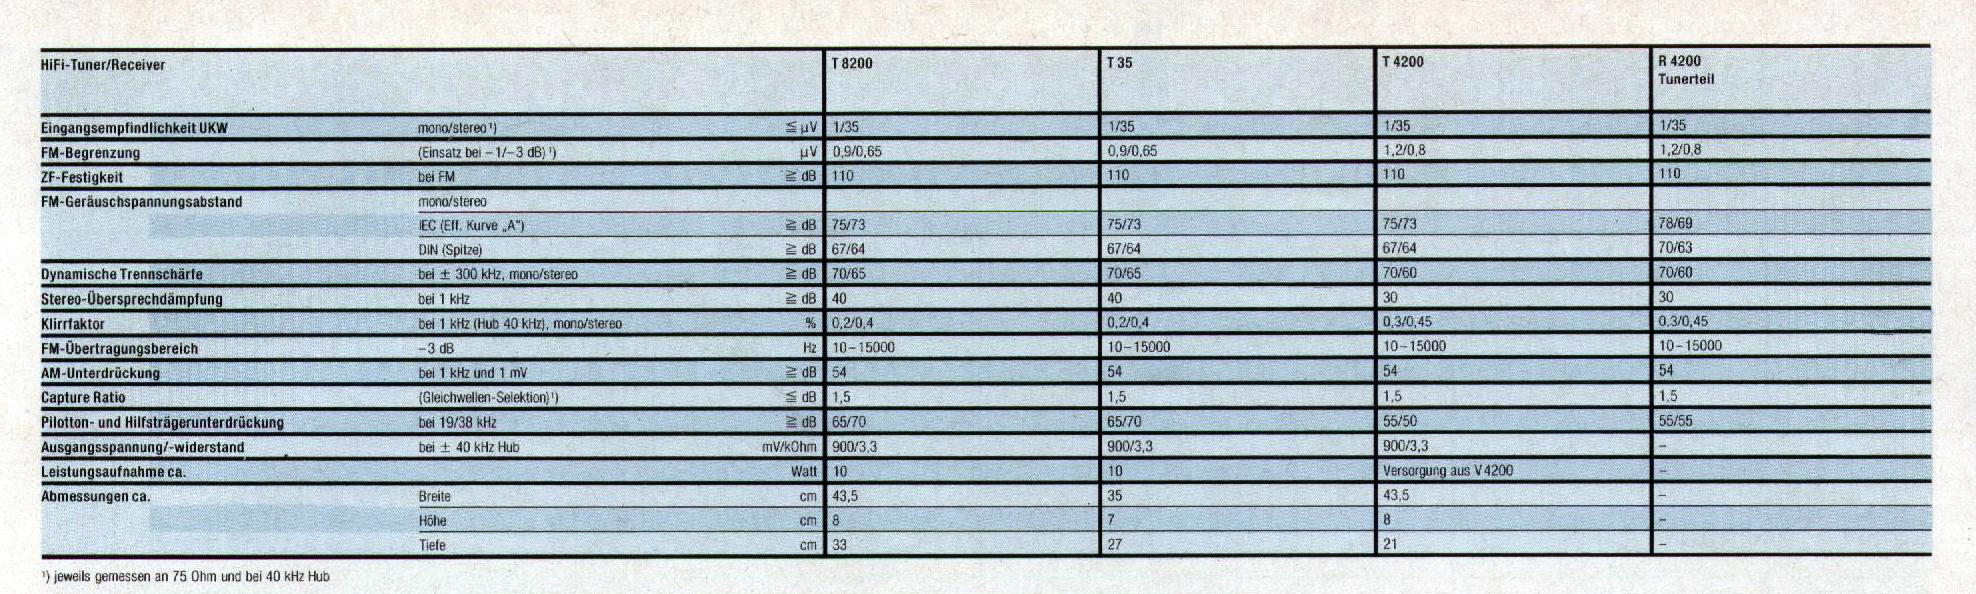 Grundig Tuner-Daten-1987.jpg